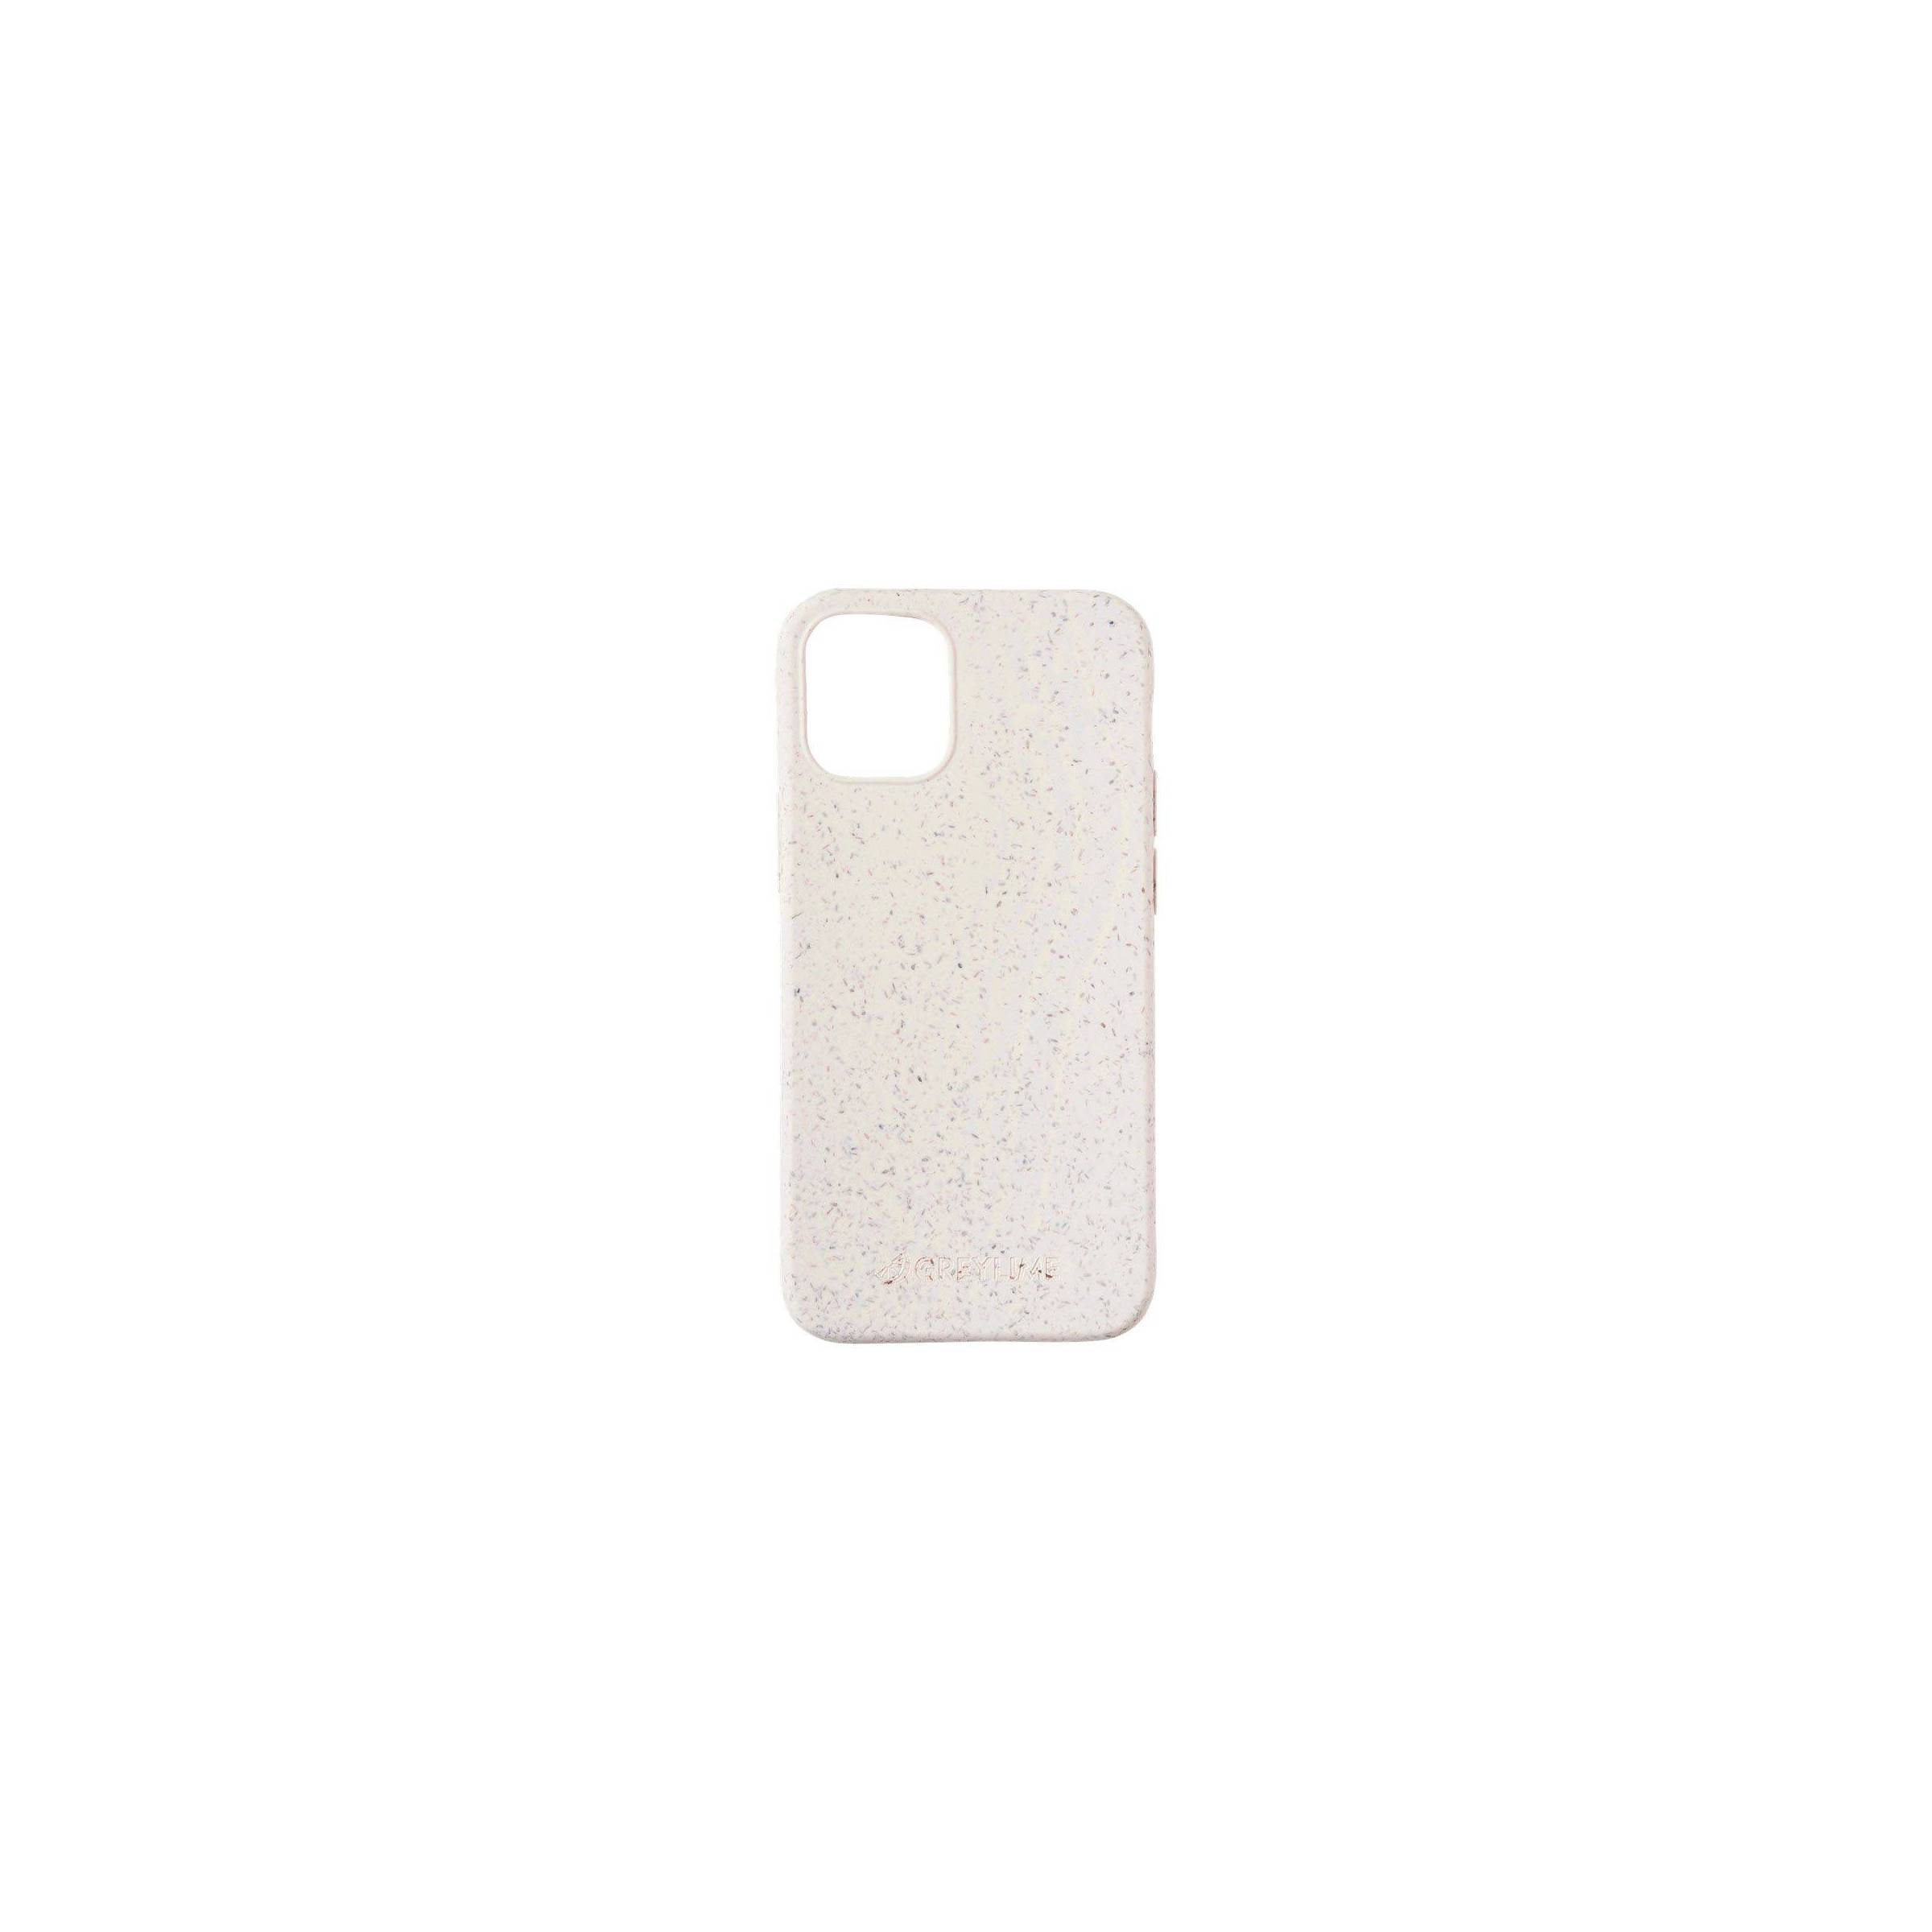 Bilde av Greylime Iphone 12 Mini Biodegradable Cover, Beige